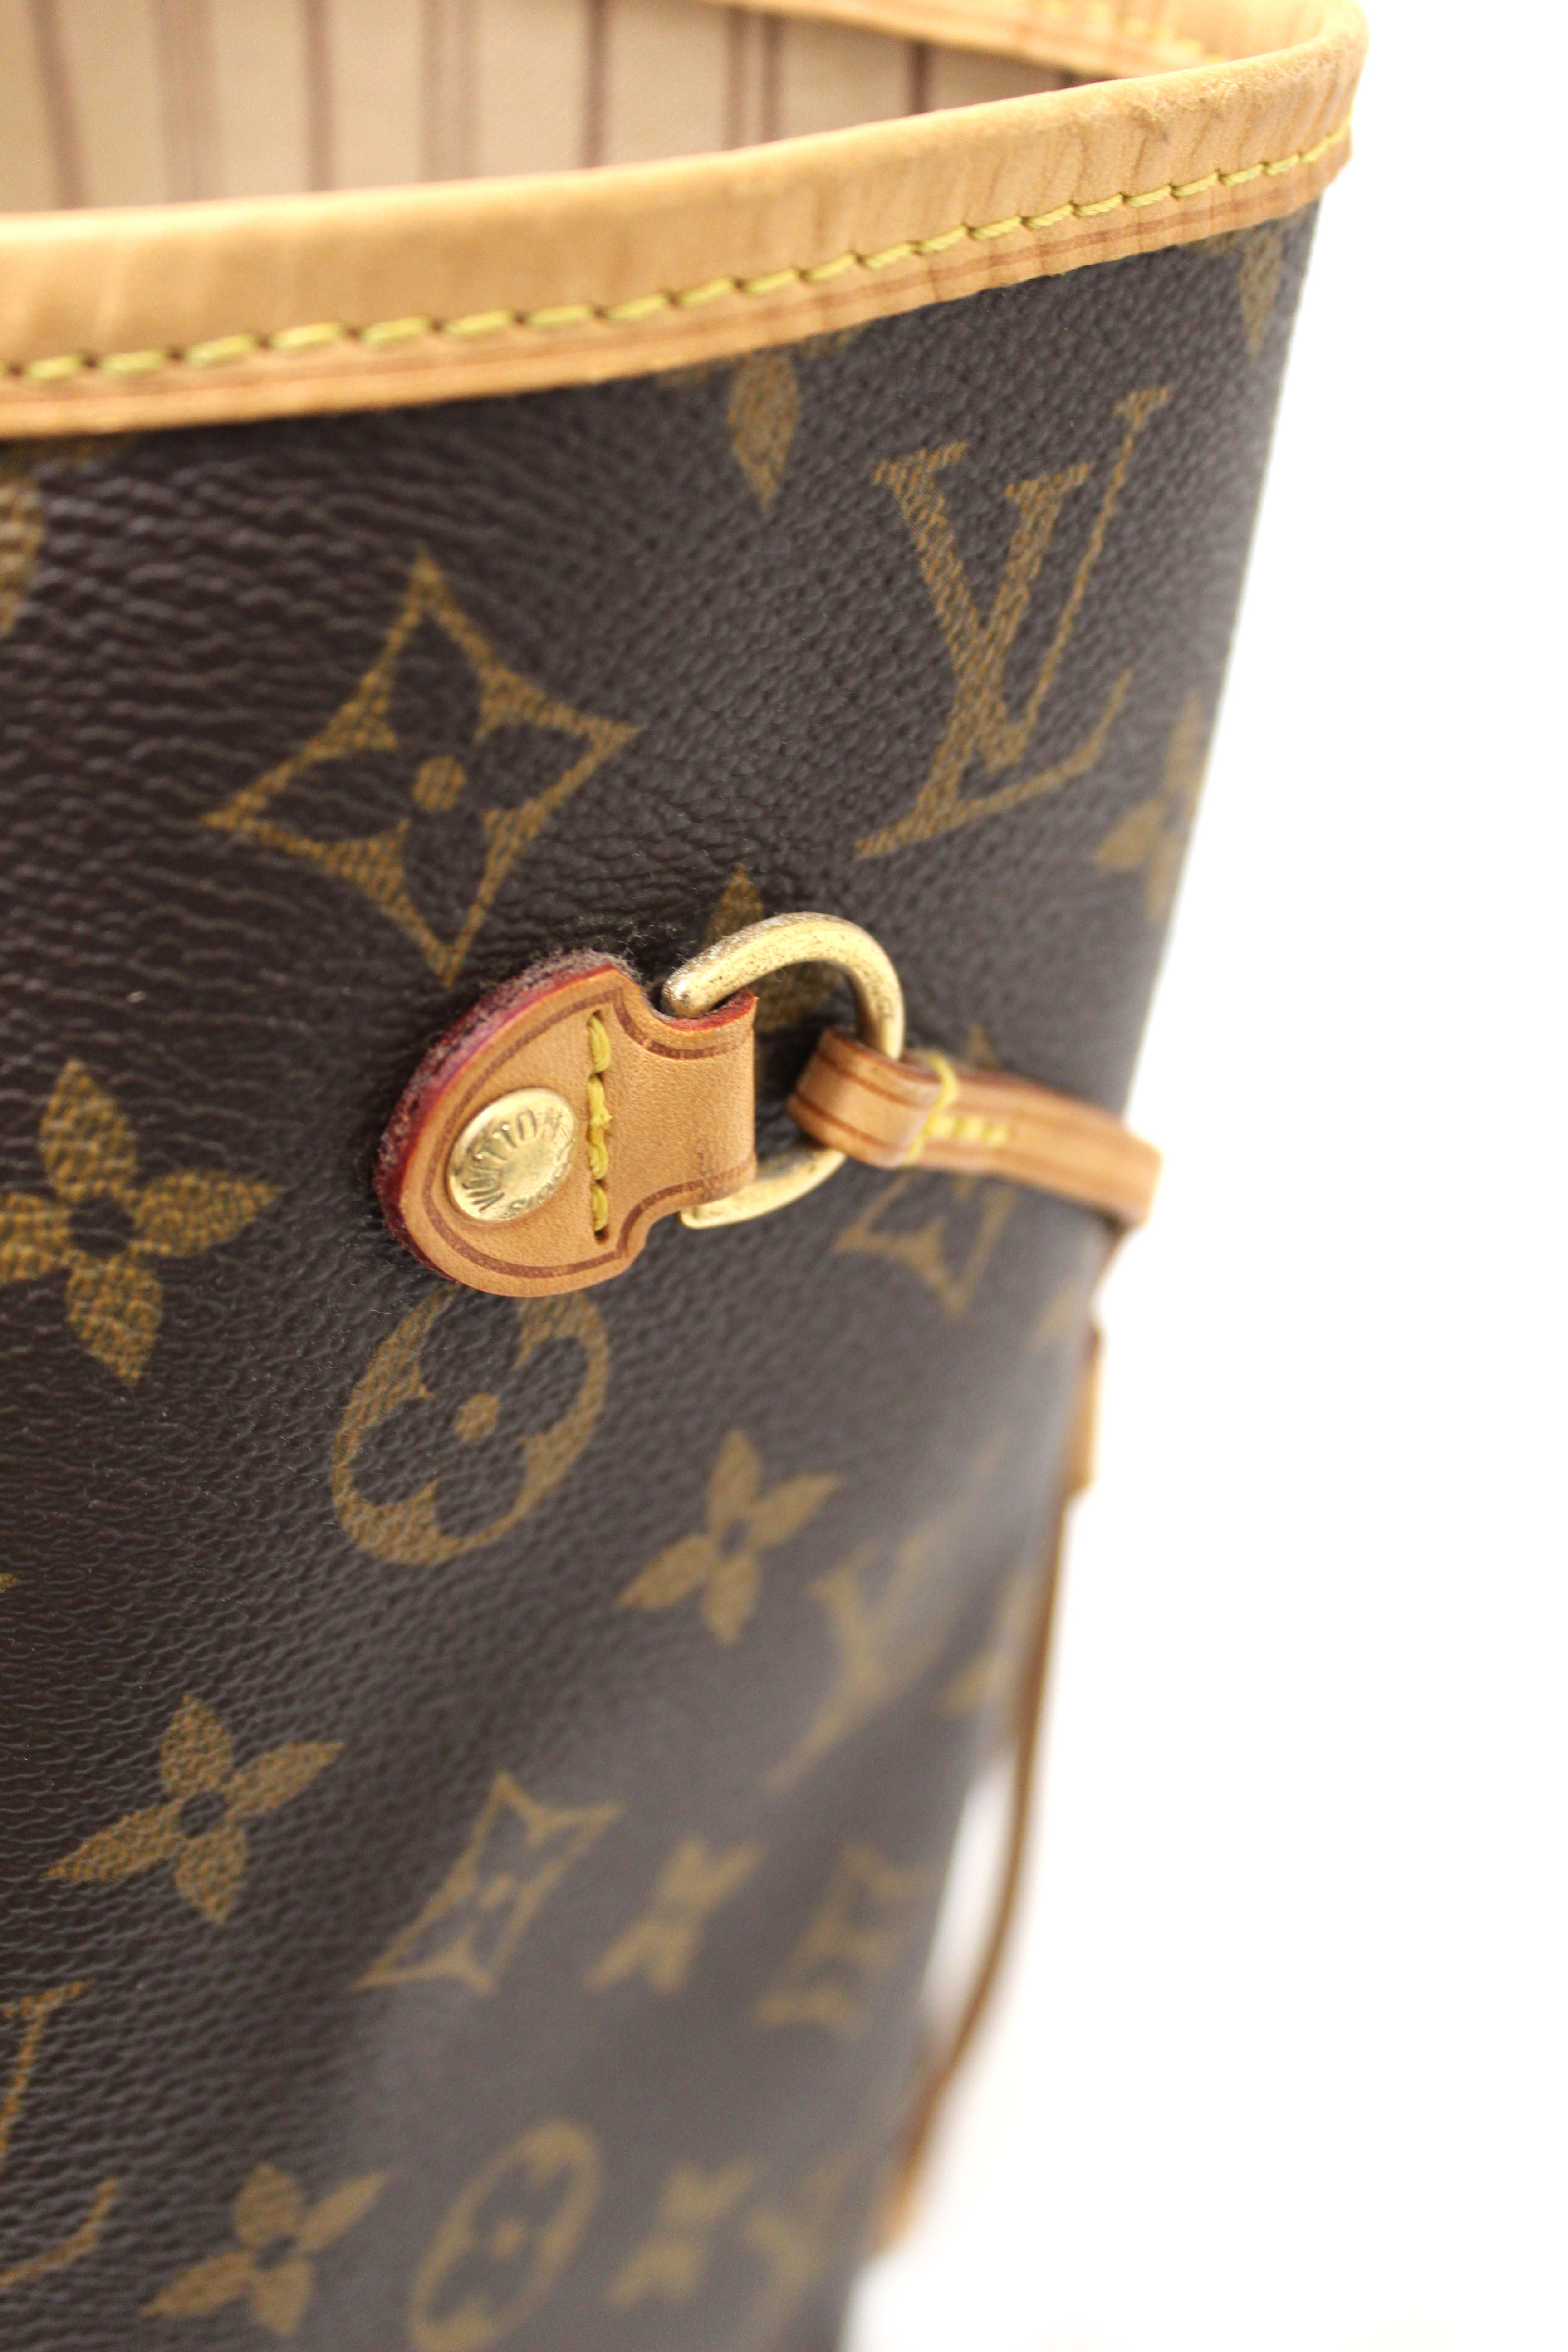 Louis Vuitton, Bags, Authentic Louis Vuitton Neverfull Mm